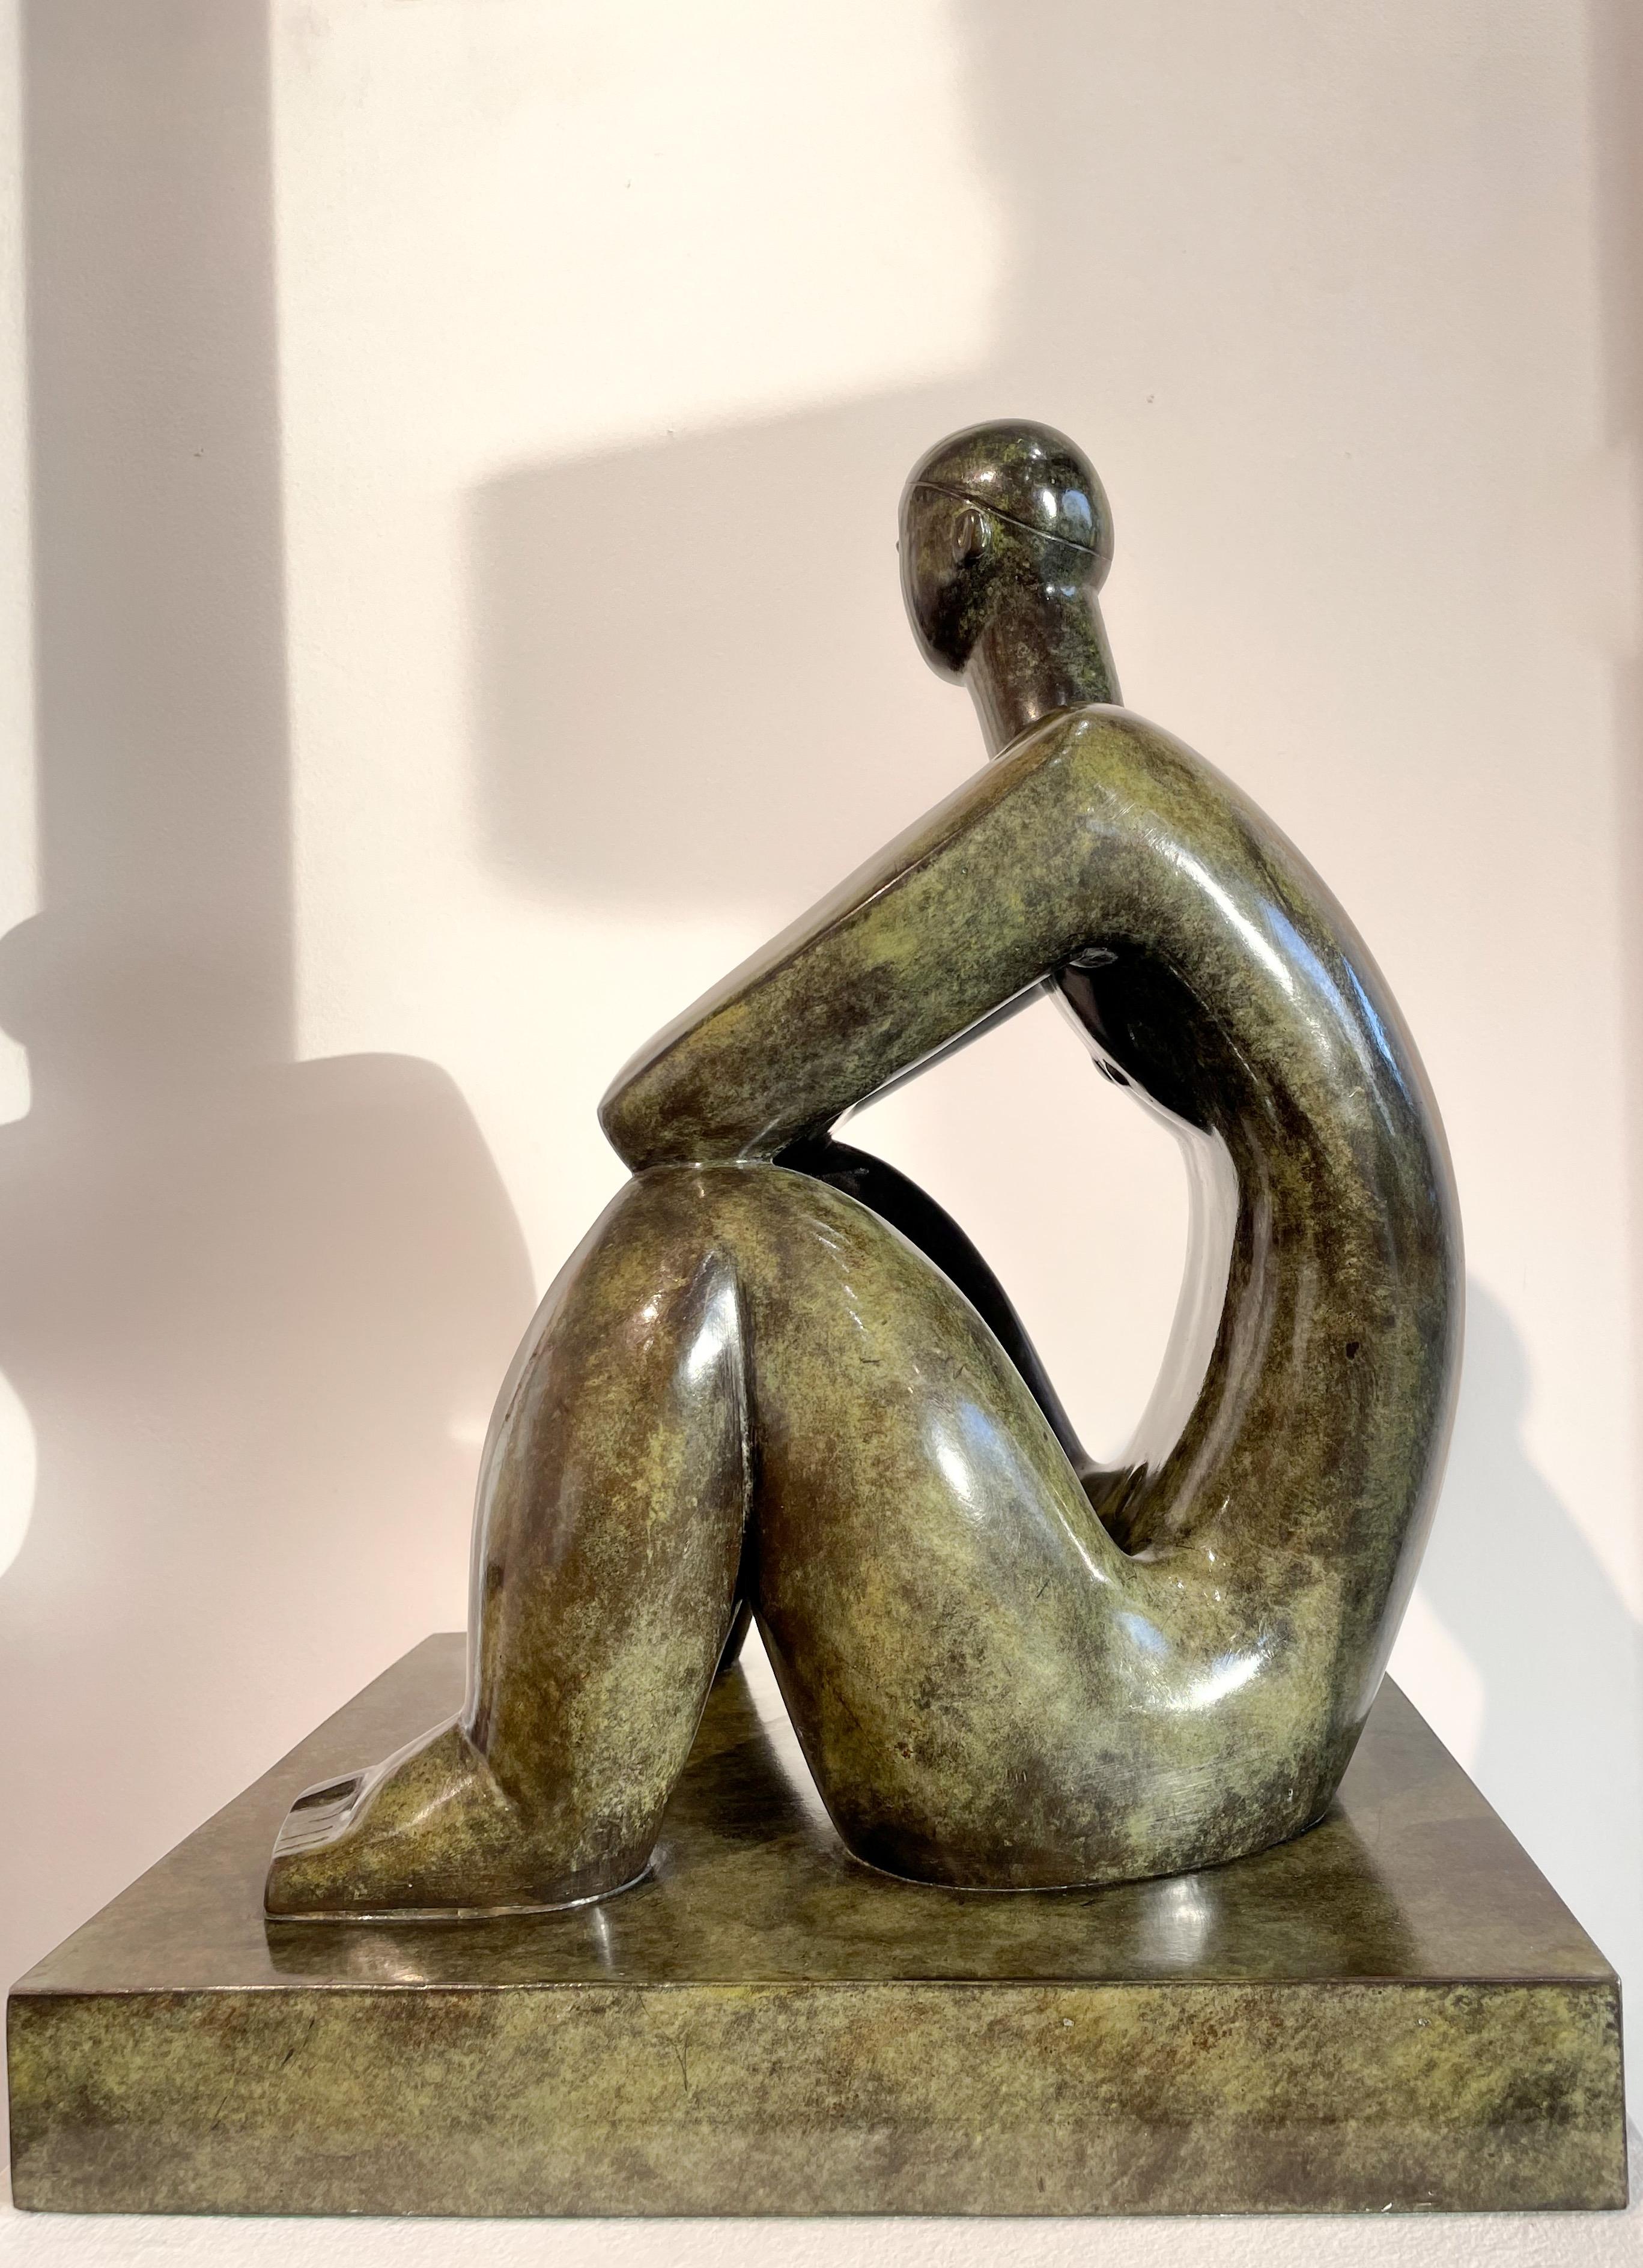 Boldi ist ein ungarischer Bildhauer, der am 31. Oktober 1970 in Budapest geboren wurde. 1990 studierte er an der Hochschule für bildende Künste in Wien in der Abteilung für Bildhauerei. 1995 machte er seinen Abschluss als Bildhauer an der